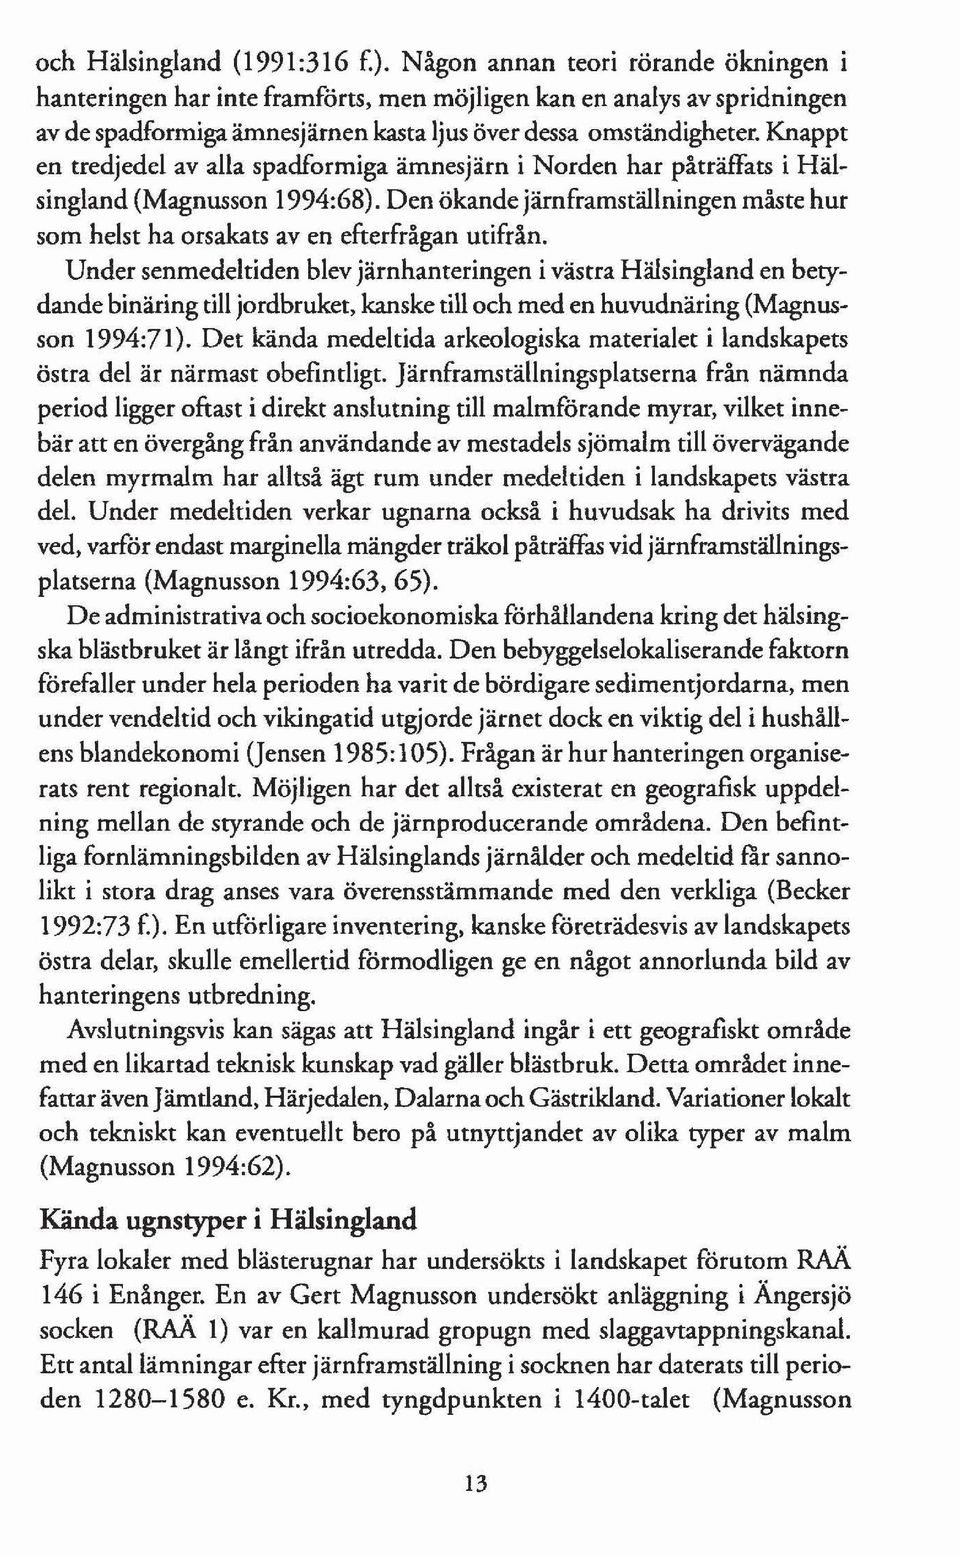 Knappt en tredjedel av alla spadformiga ämnesjärn i Norden har påträffats i Hälsingland (Magnusson 1994:68). Den ökande järnframställningen måste hur som helst ha orsakats aven efterfrågan utifrån.